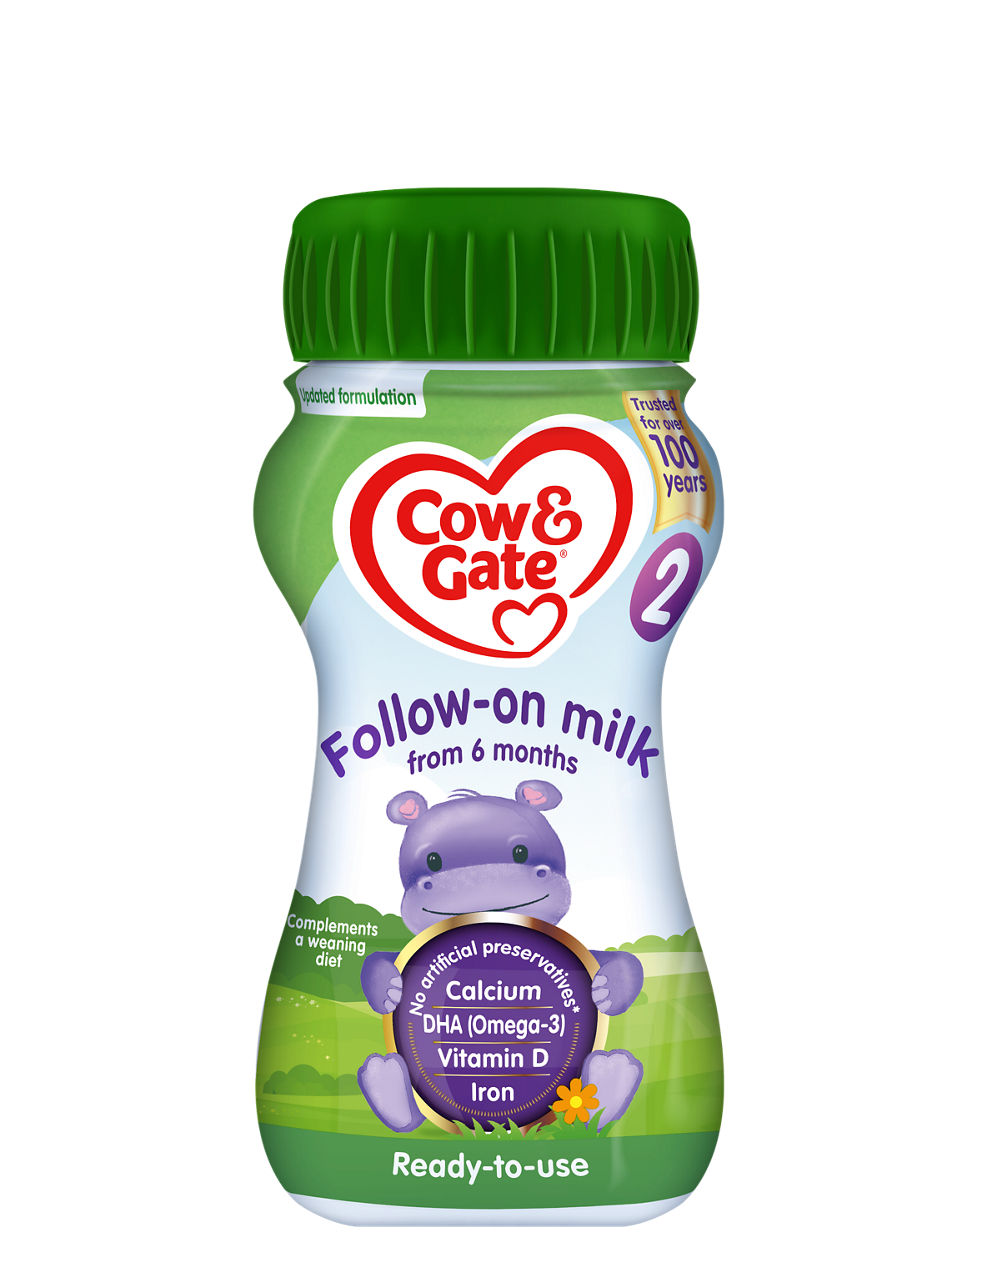 Cow & Gate Follow-on milk (Liquid) 200ml Bottle